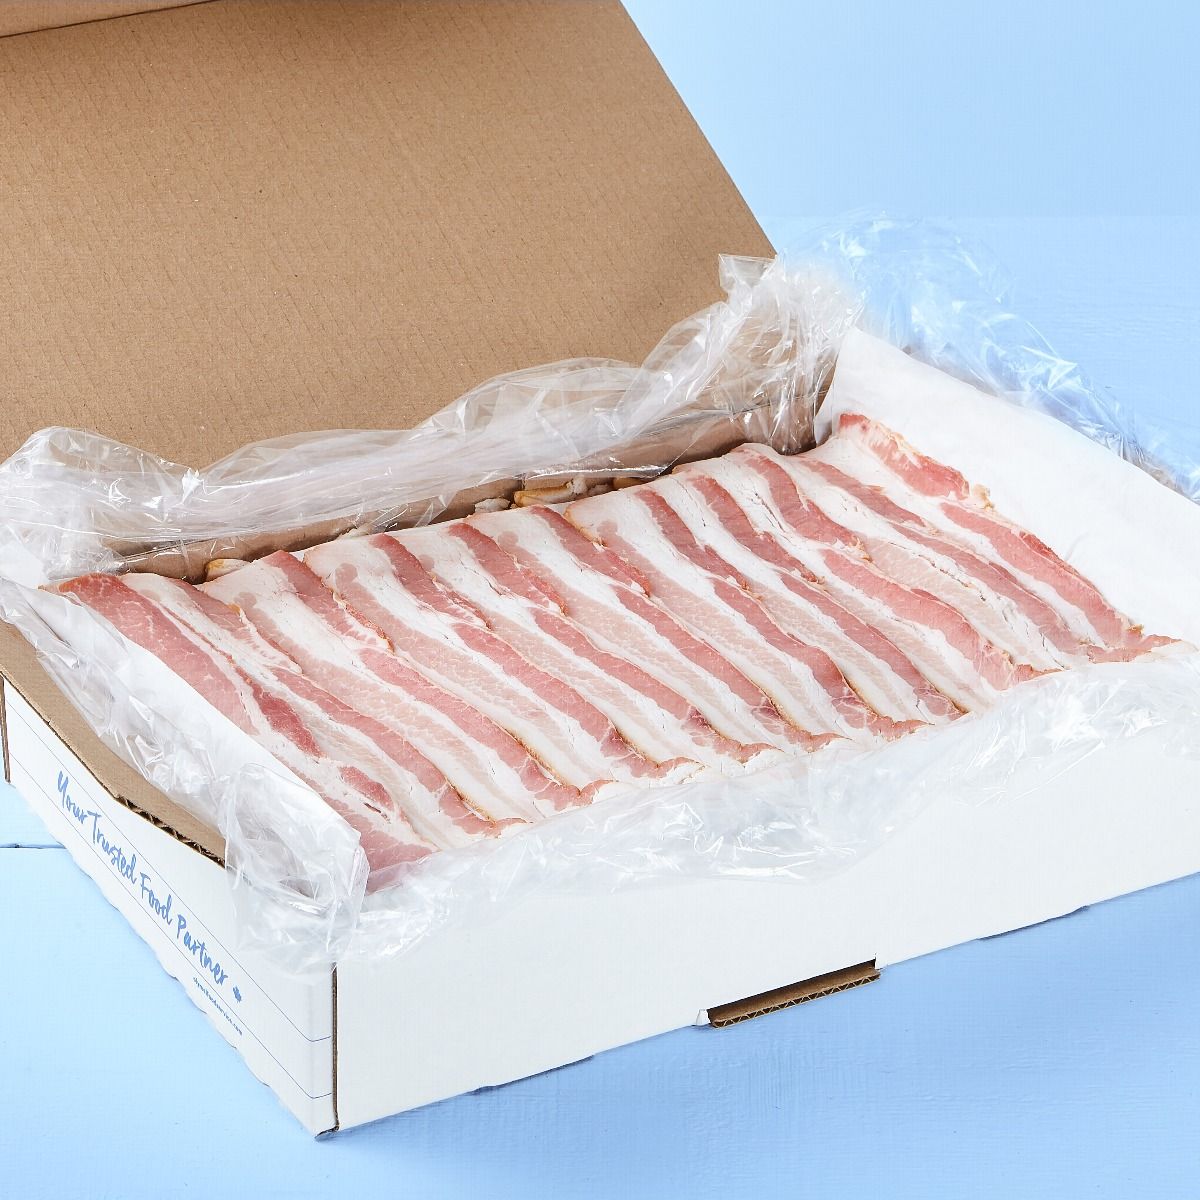 Bacon frais tranché étalé 22 tranches / 2'' ) fumé naturellement (Frais) 5KG